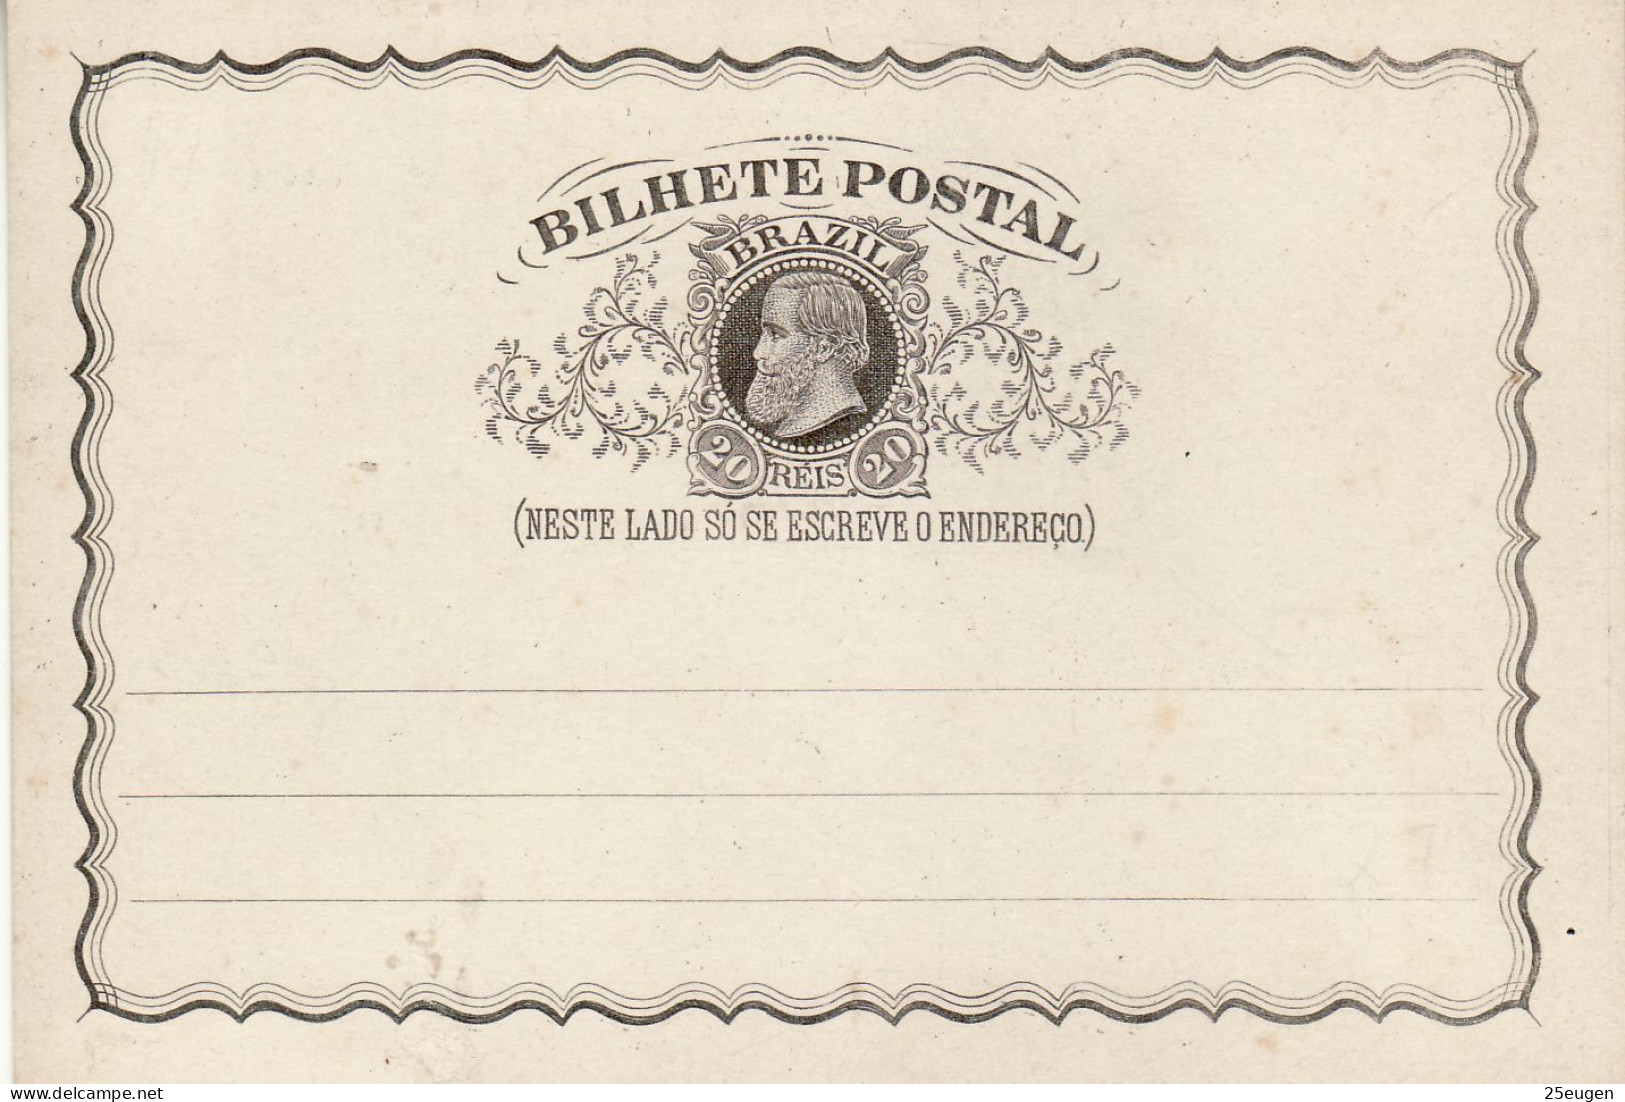 BRAZIL 1883 POSTCARD UNUSED - Postal Stationery